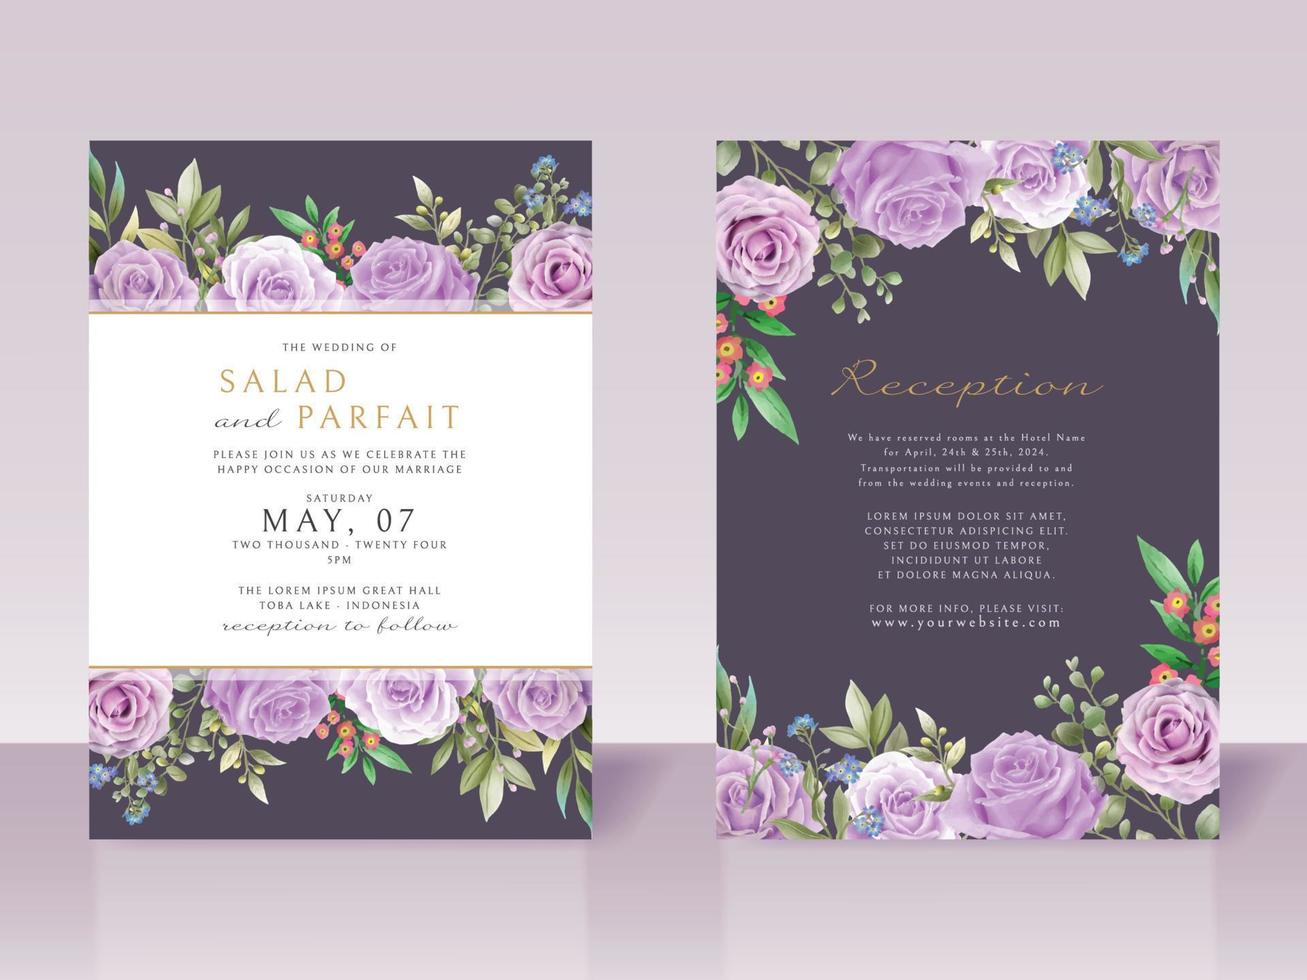 modèle de carte d'invitation de mariage avec des fleurs violettes vecteur